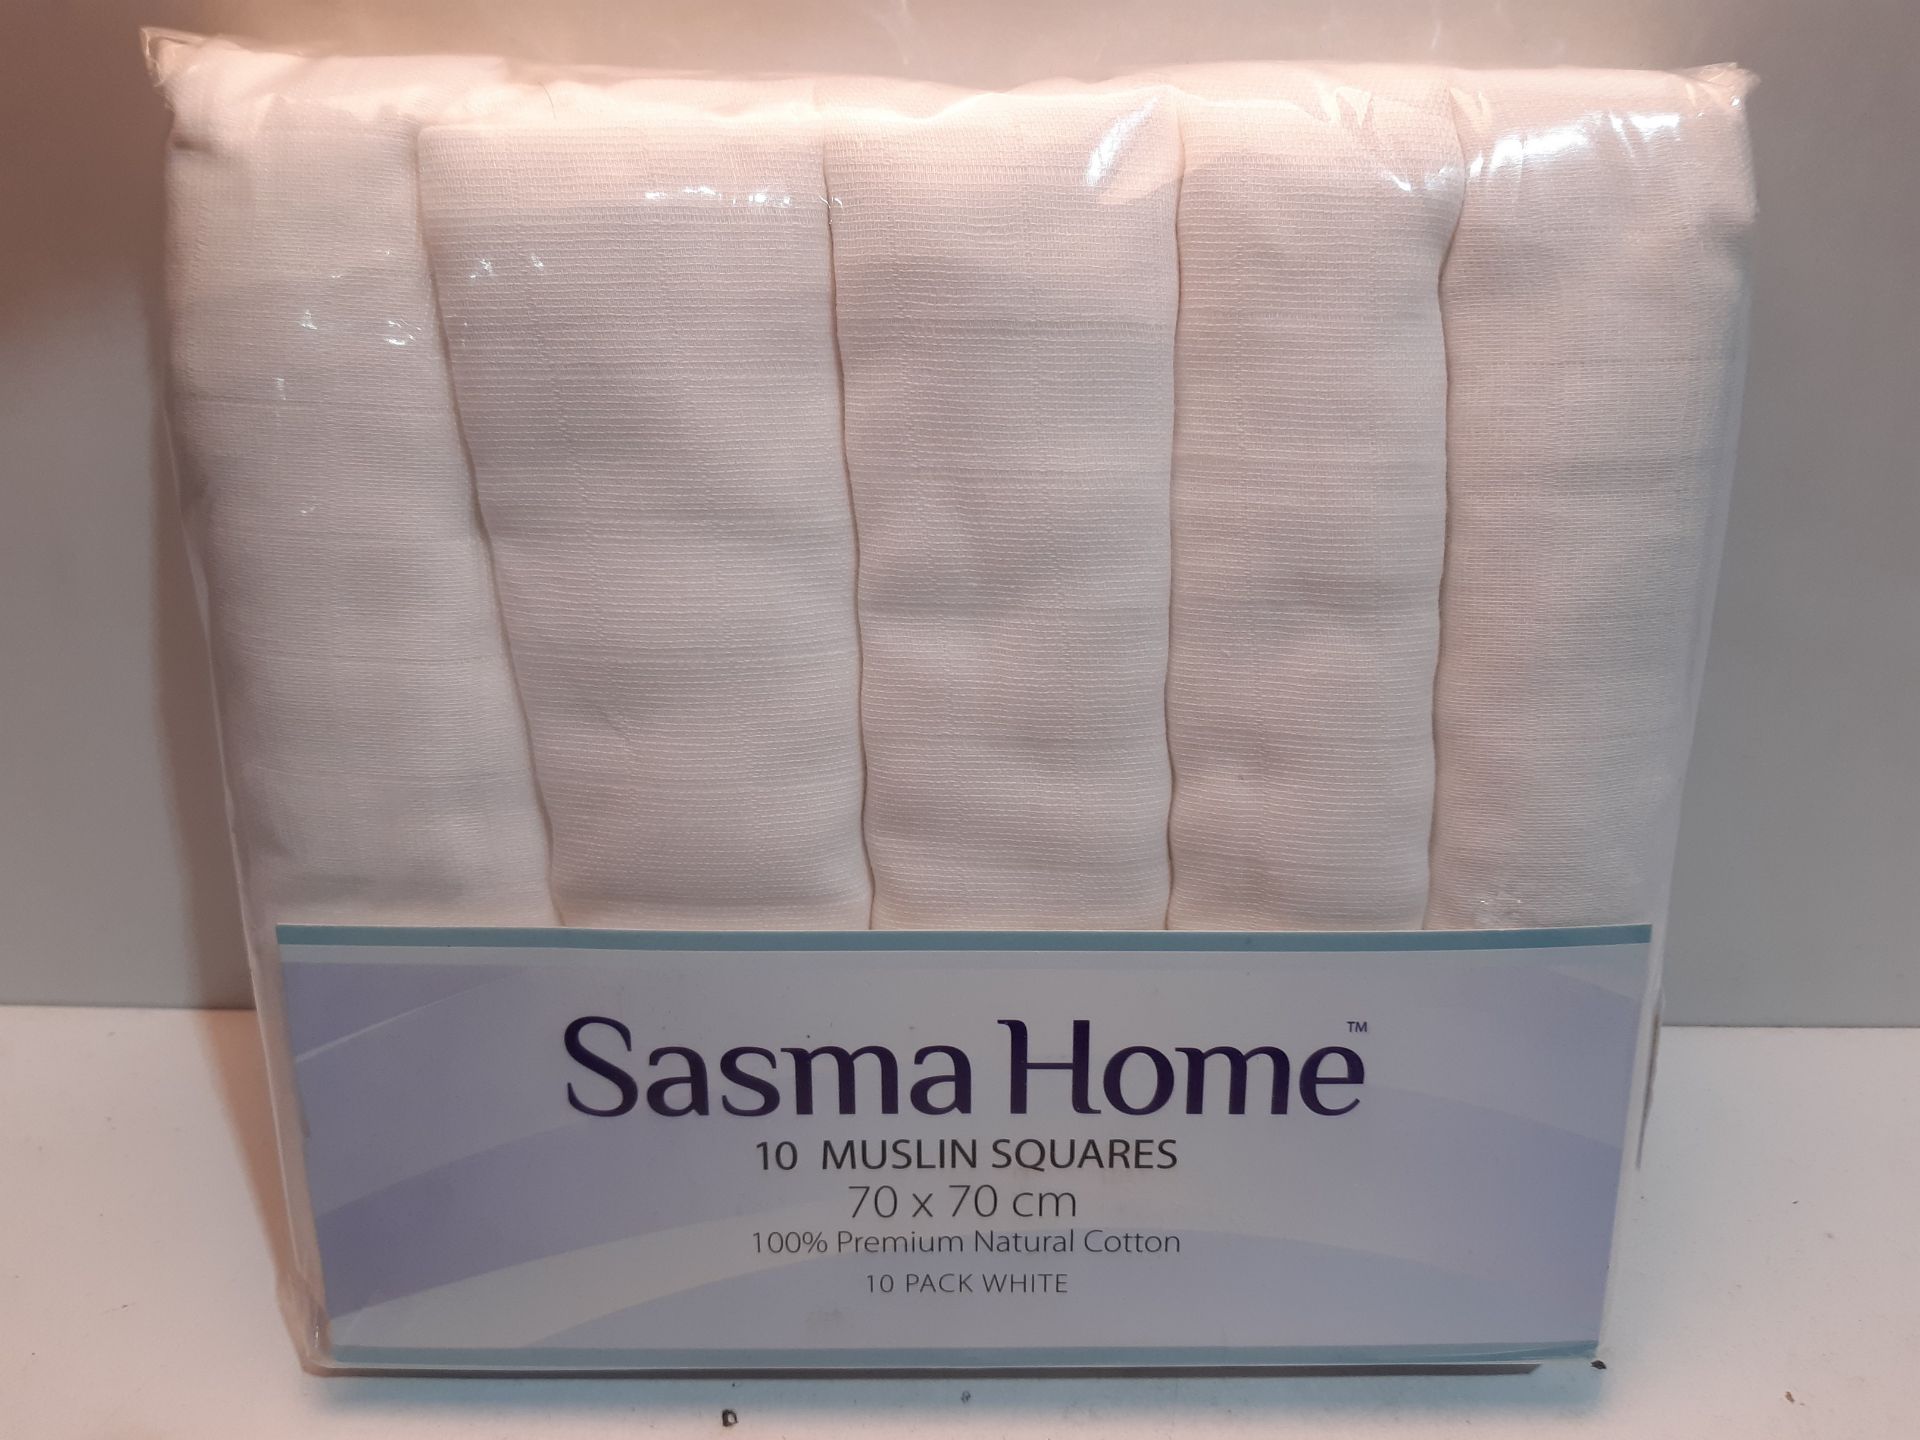 RRP £11.95 Sasma Home - Image 2 of 2